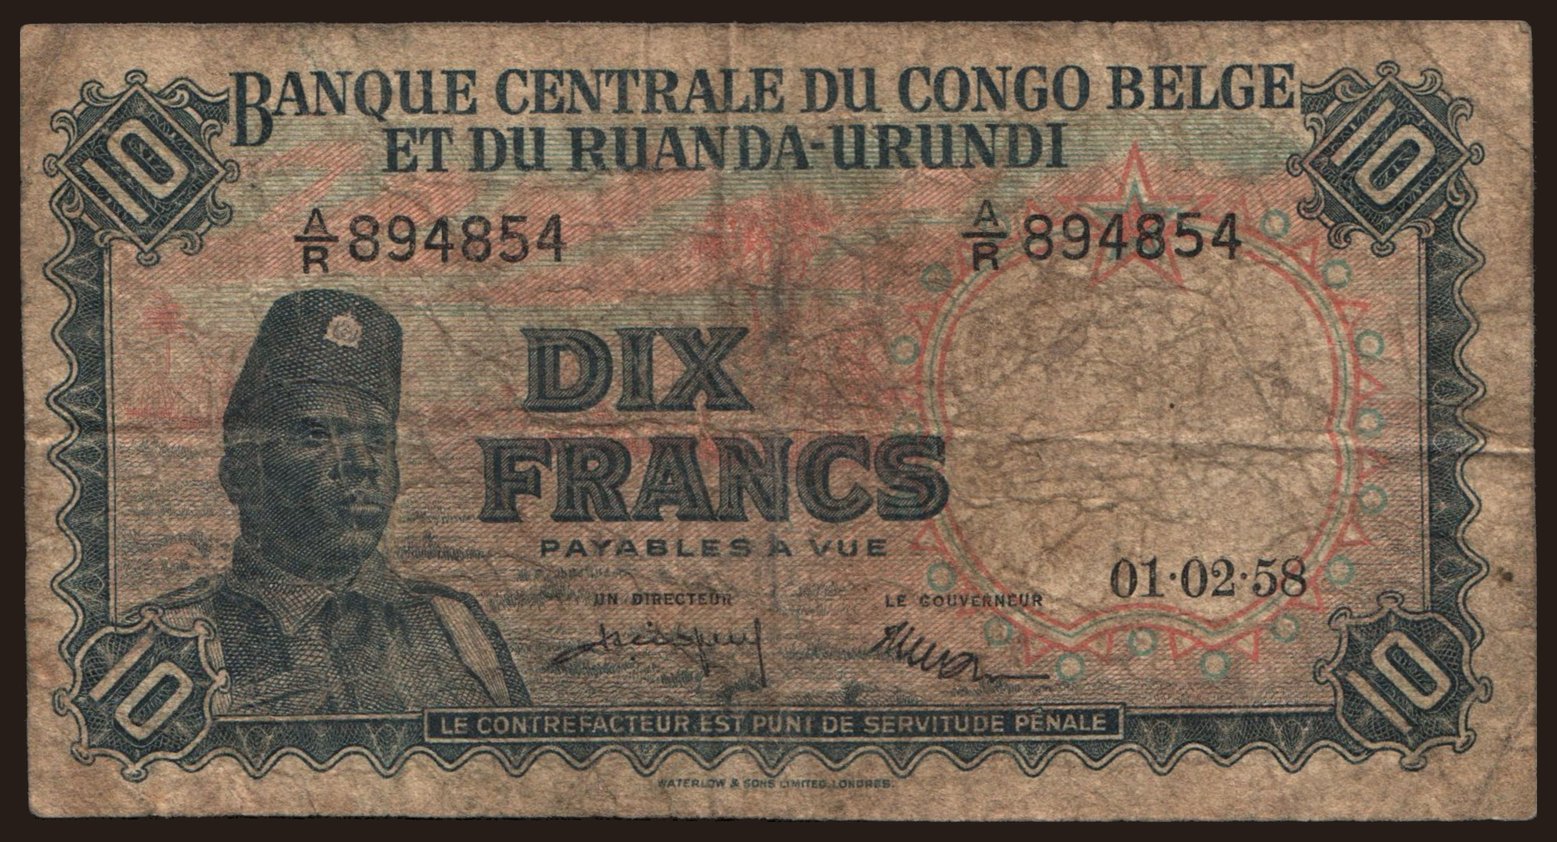 10 francs, 1958